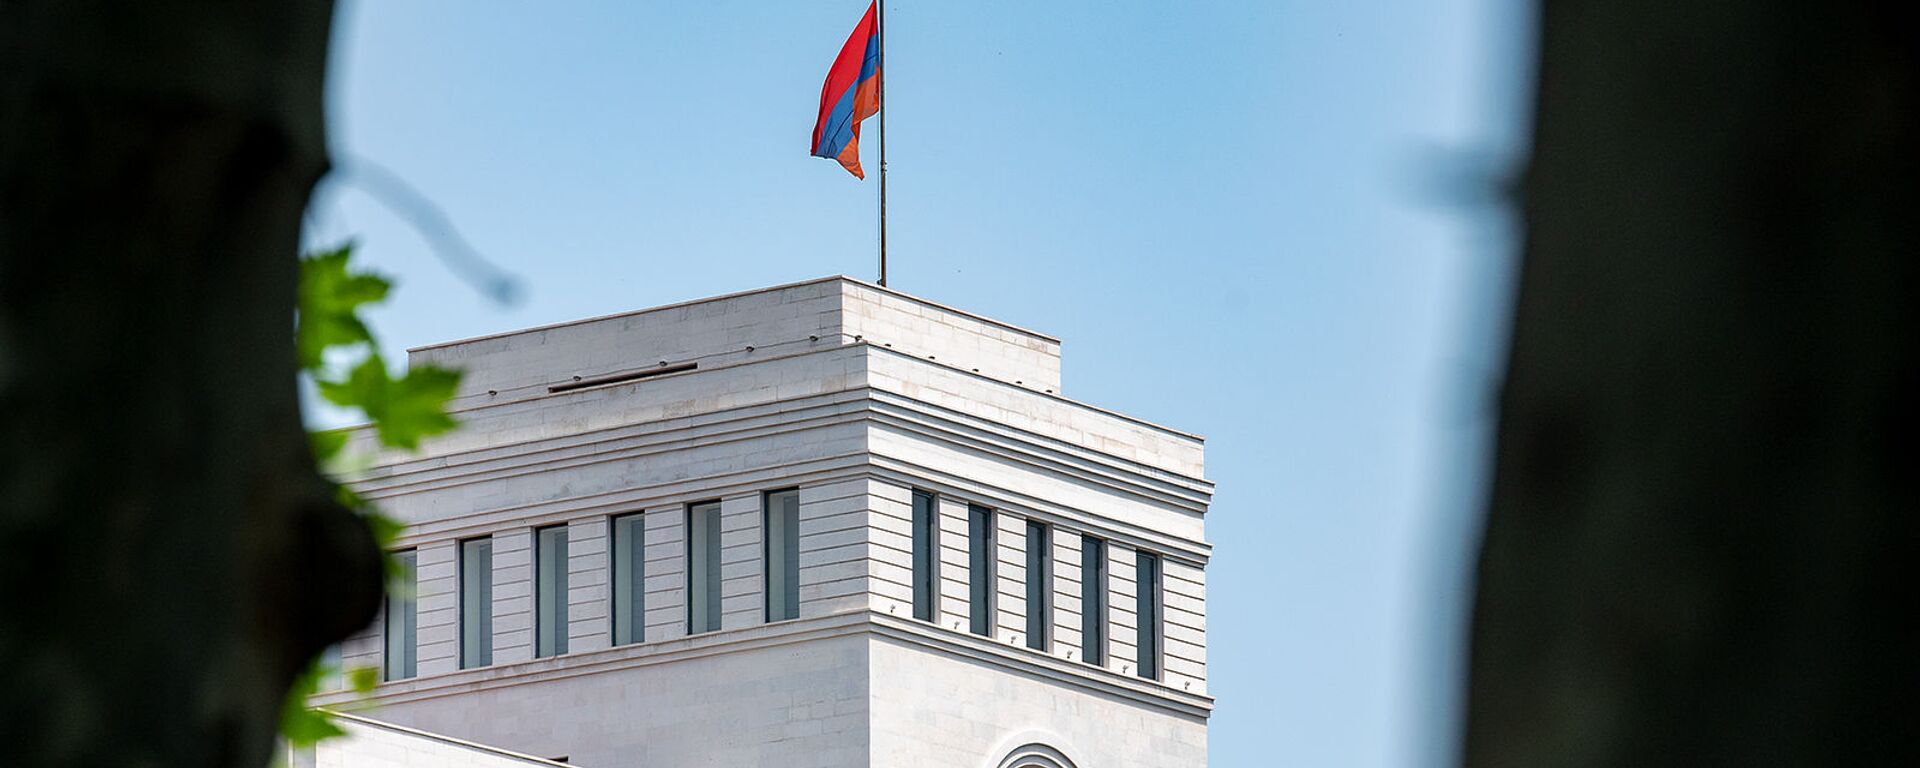 Здание Министерства иностранных дел Армении - Sputnik Армения, 1920, 27.09.2021